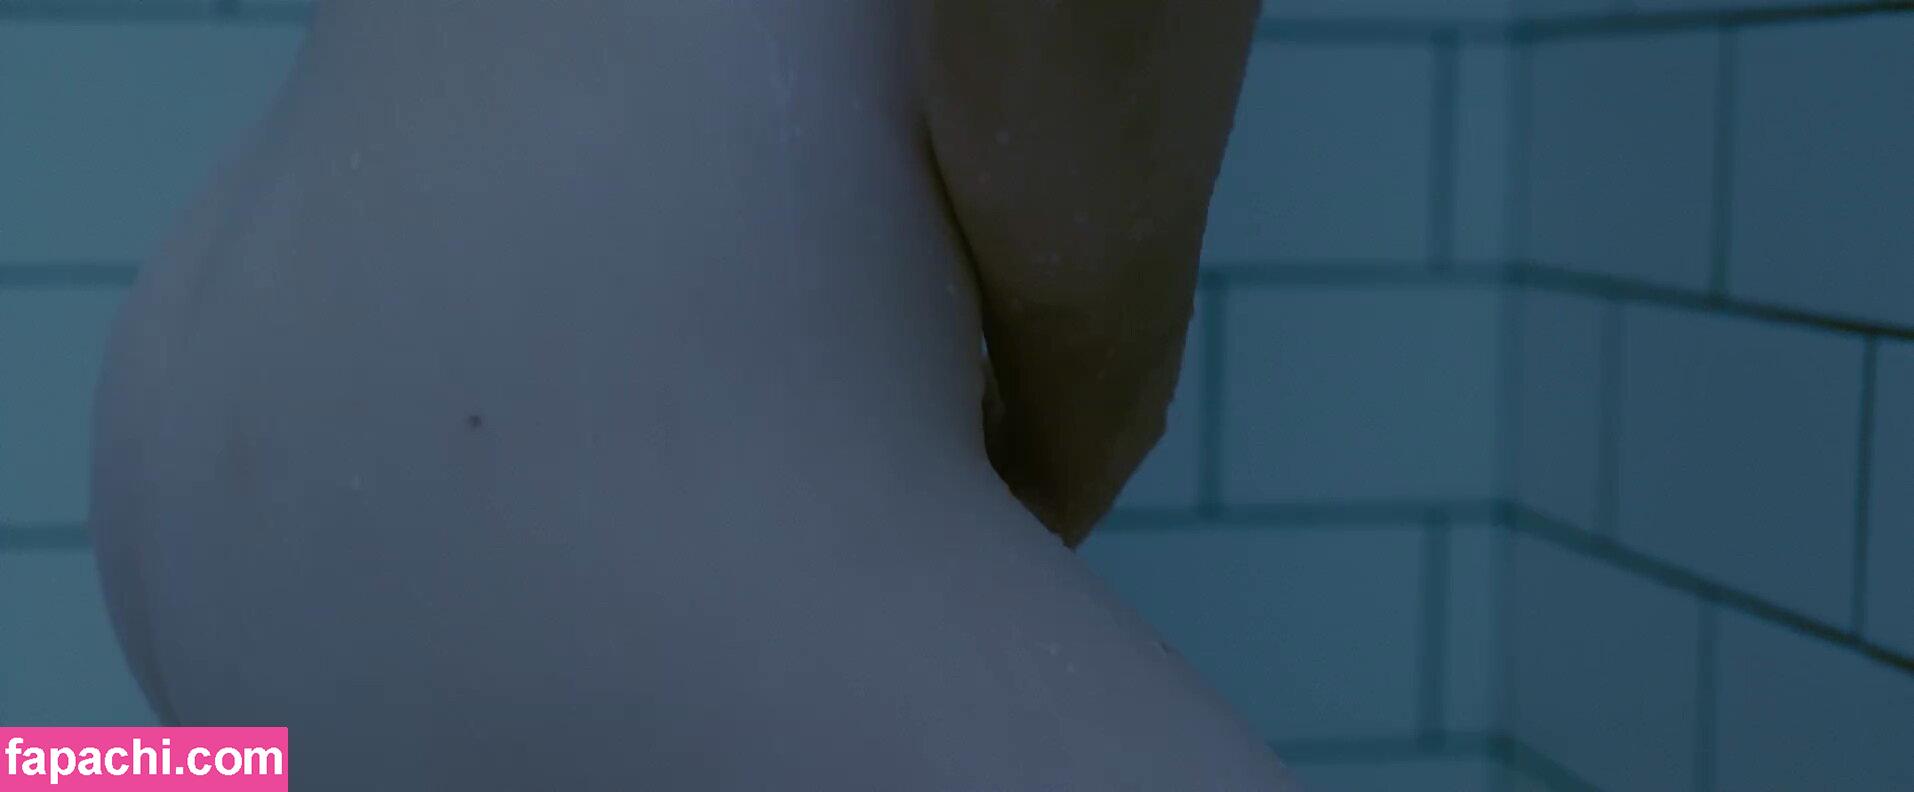 Mia Wasikowska / mia_wasikowska_ leaked nude photo #0013 from OnlyFans/Patreon